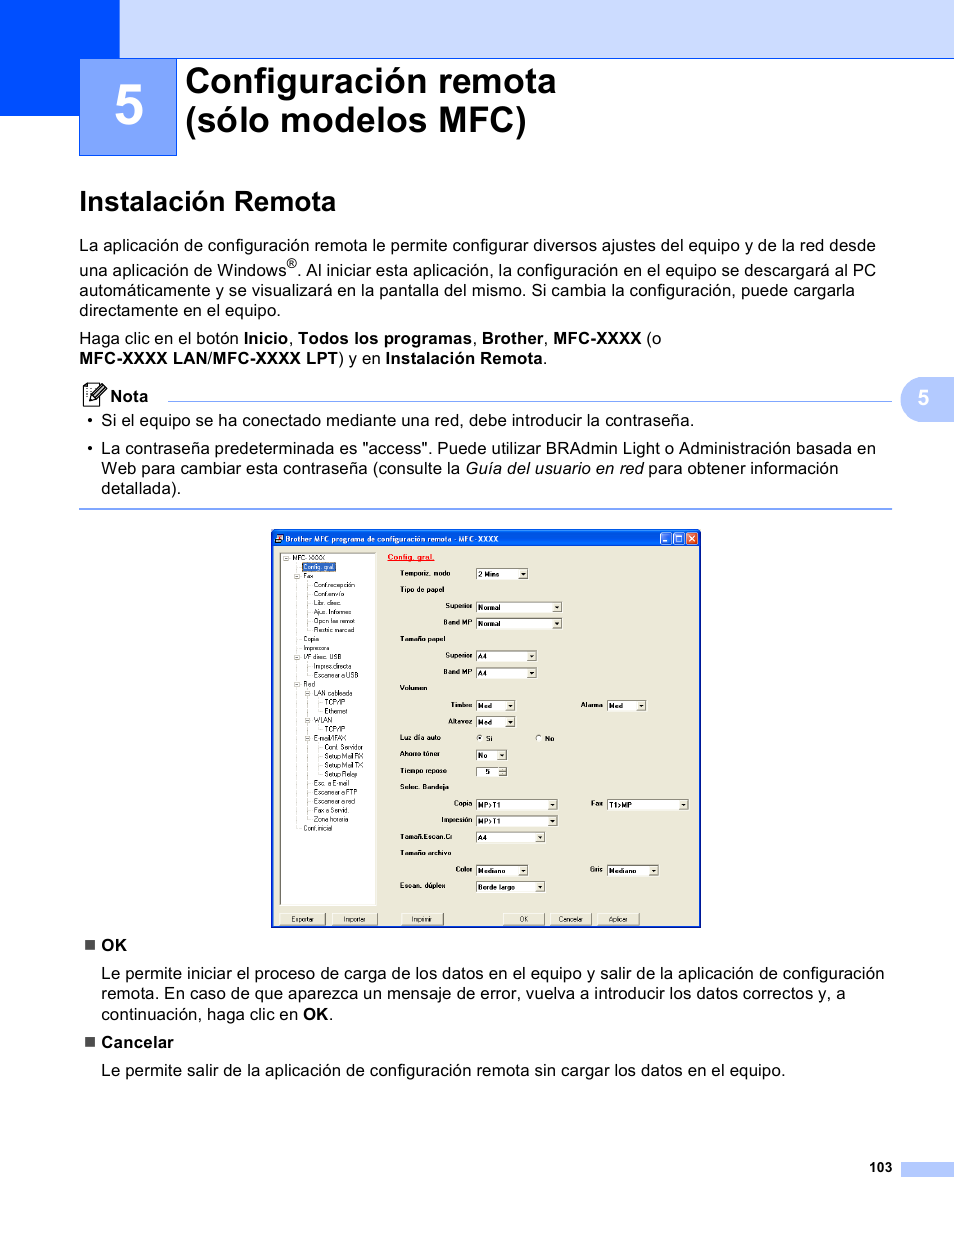 5 configuración remota (sólo modelos mfc), Instalación remota, Configuración remota (sólo modelos mfc) | Brother MFC 8890DW Manual del usuario | Página 110 / 229